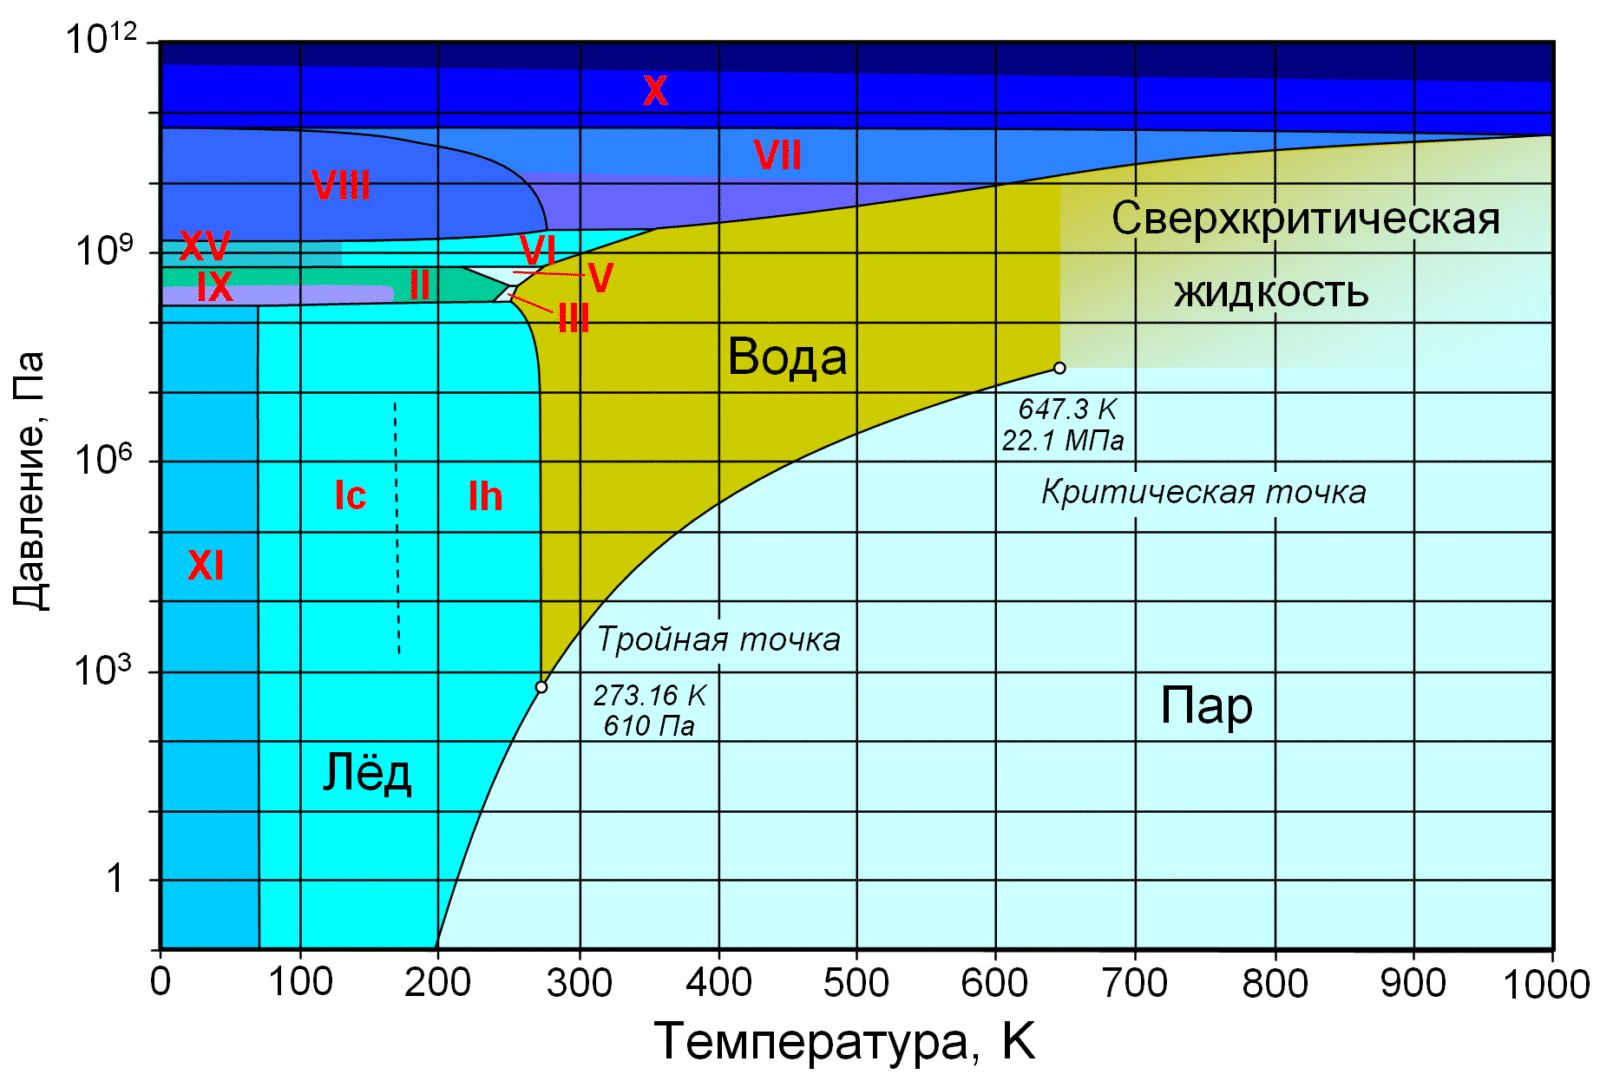 Фазовая диаграмма воды: по вертикальной оси — давление в Па, по горизонтальной — температура в Кельвинах. Отмечены критическая (647,3 K; 22,1 МПа) и тройная (273,16 K; 610 Па) точки. Римскими цифрами отмечены различные структурные модификации льда Автор: AdmiralHood